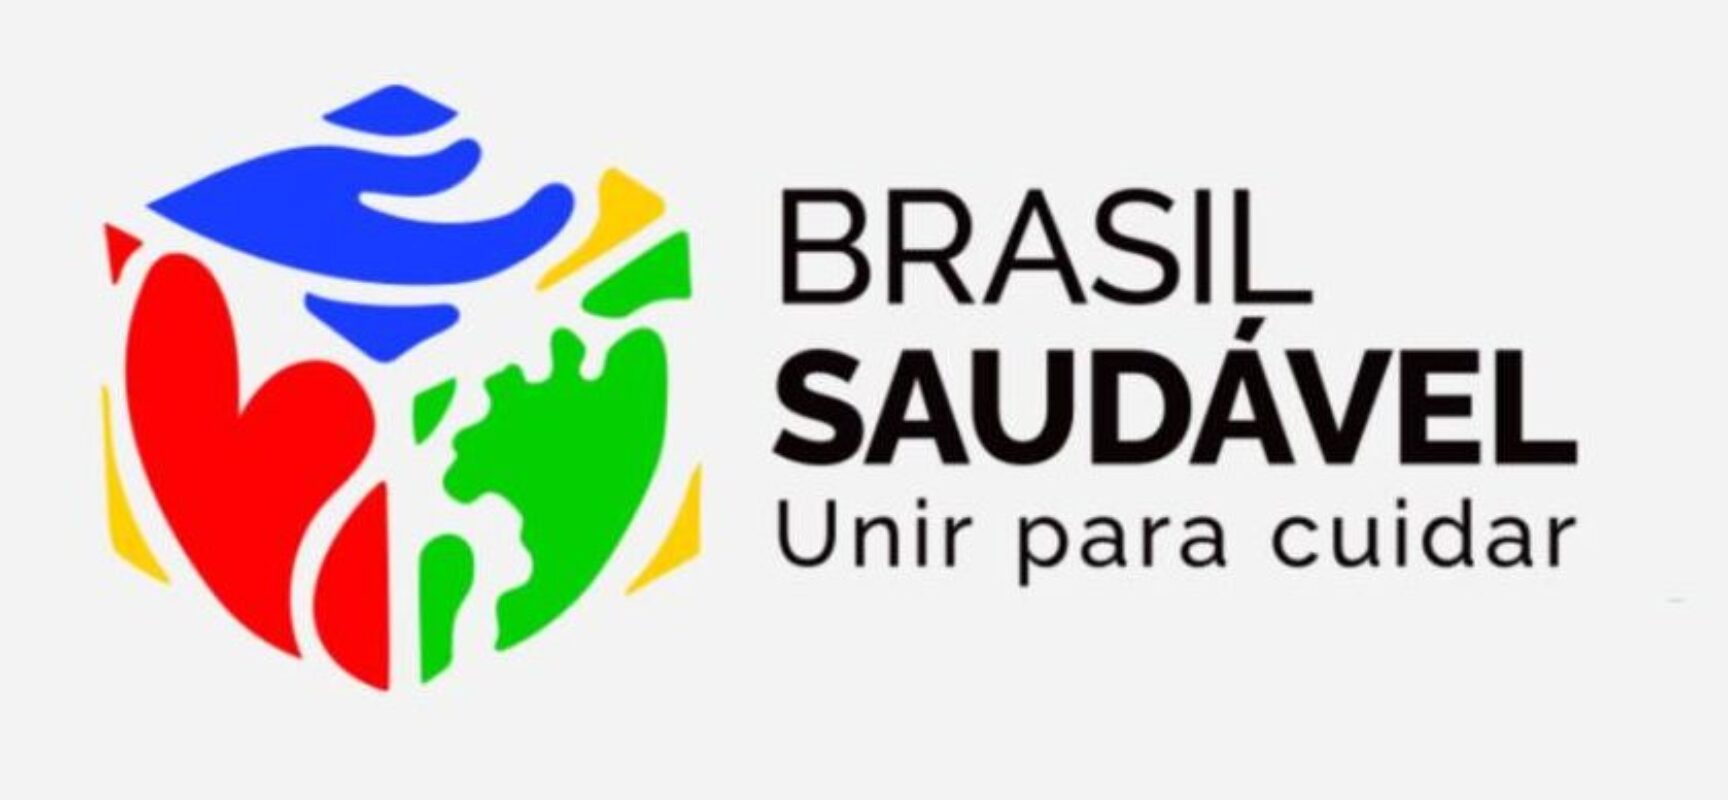 Proposição do vereador EDERJÚNIOR que dispõe sobre “Brasil Saudável” é aprovado no legislativo